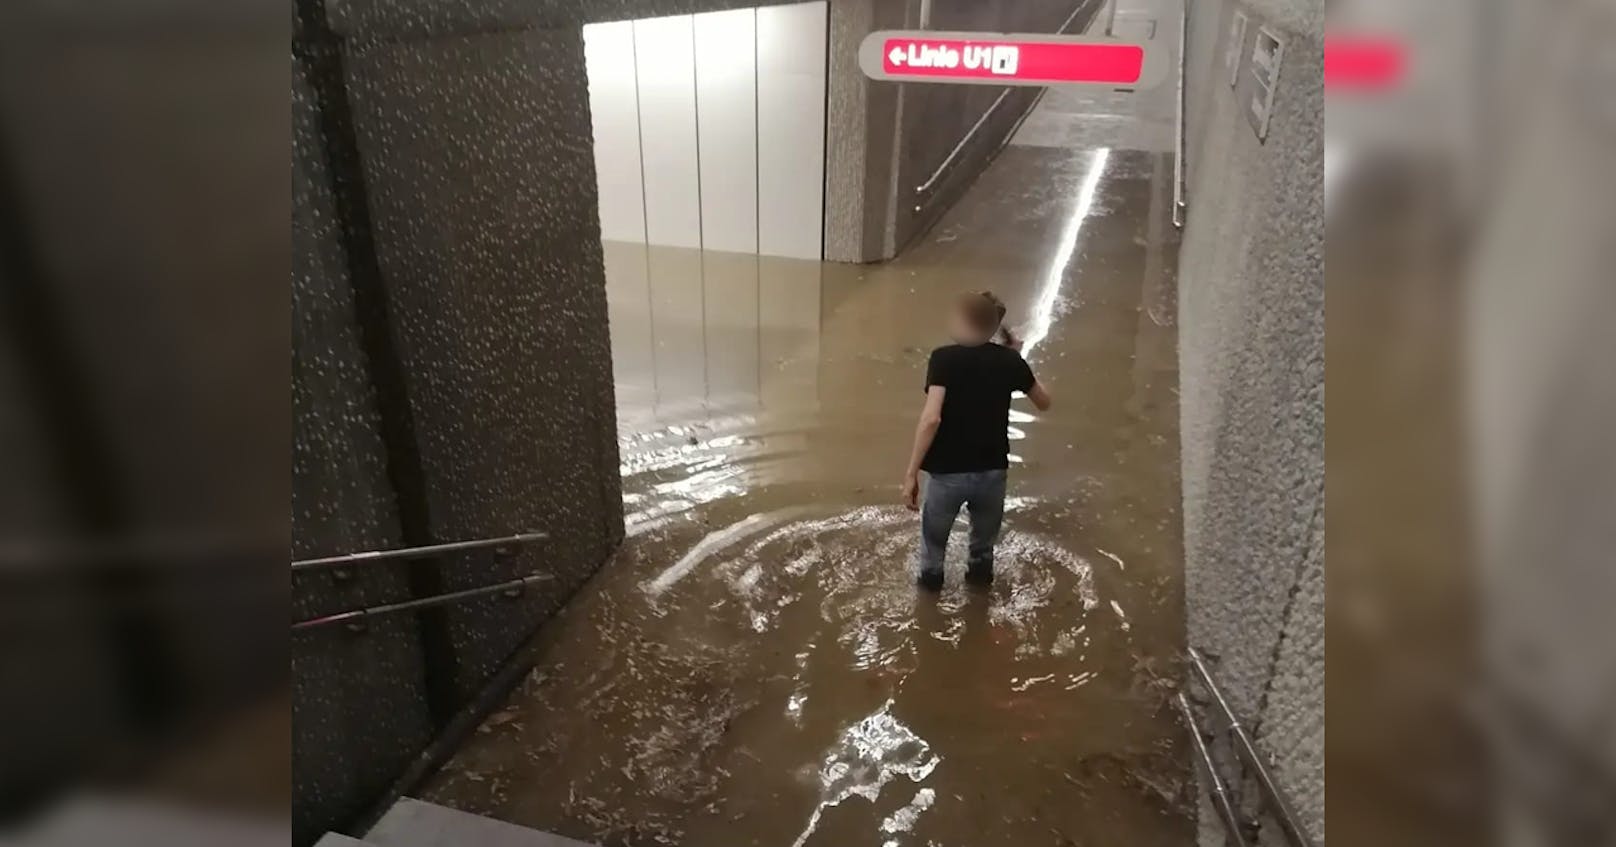 Ein Wiener musste durchs kniehohe Wasser waten um zur U-Bahn zu kommen